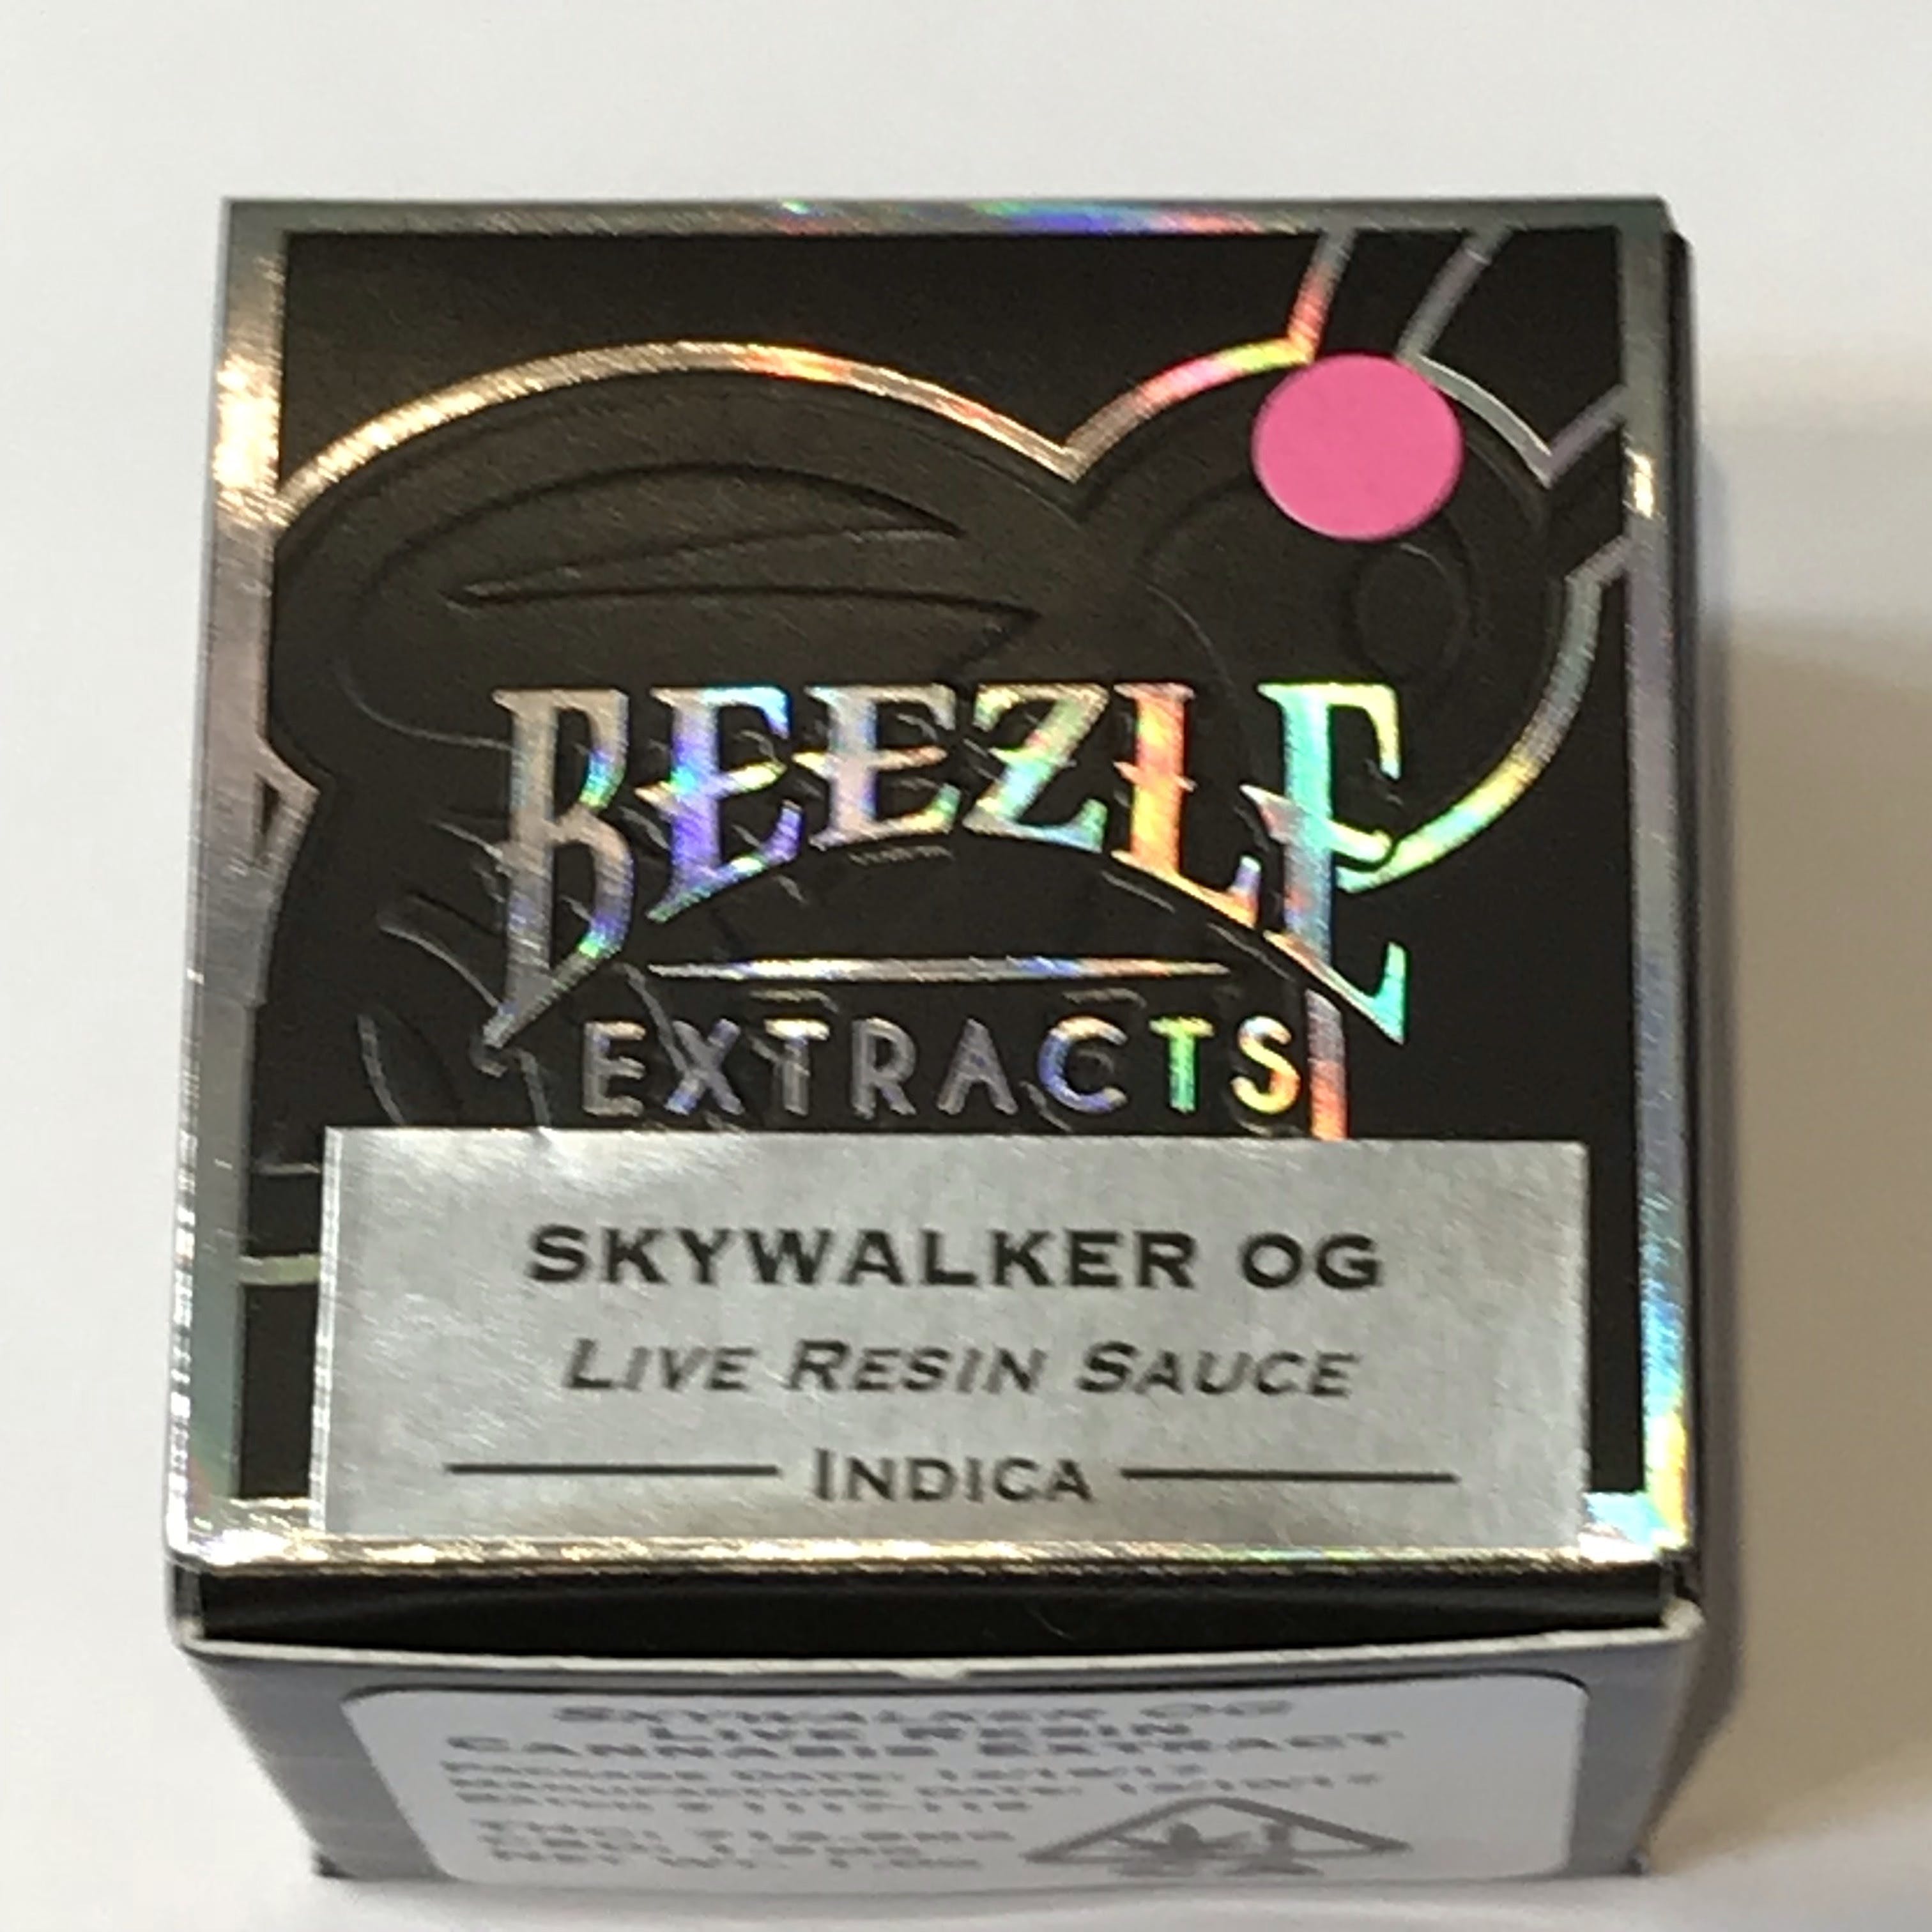 Beezle Skywalker OG Live Resin Sauce